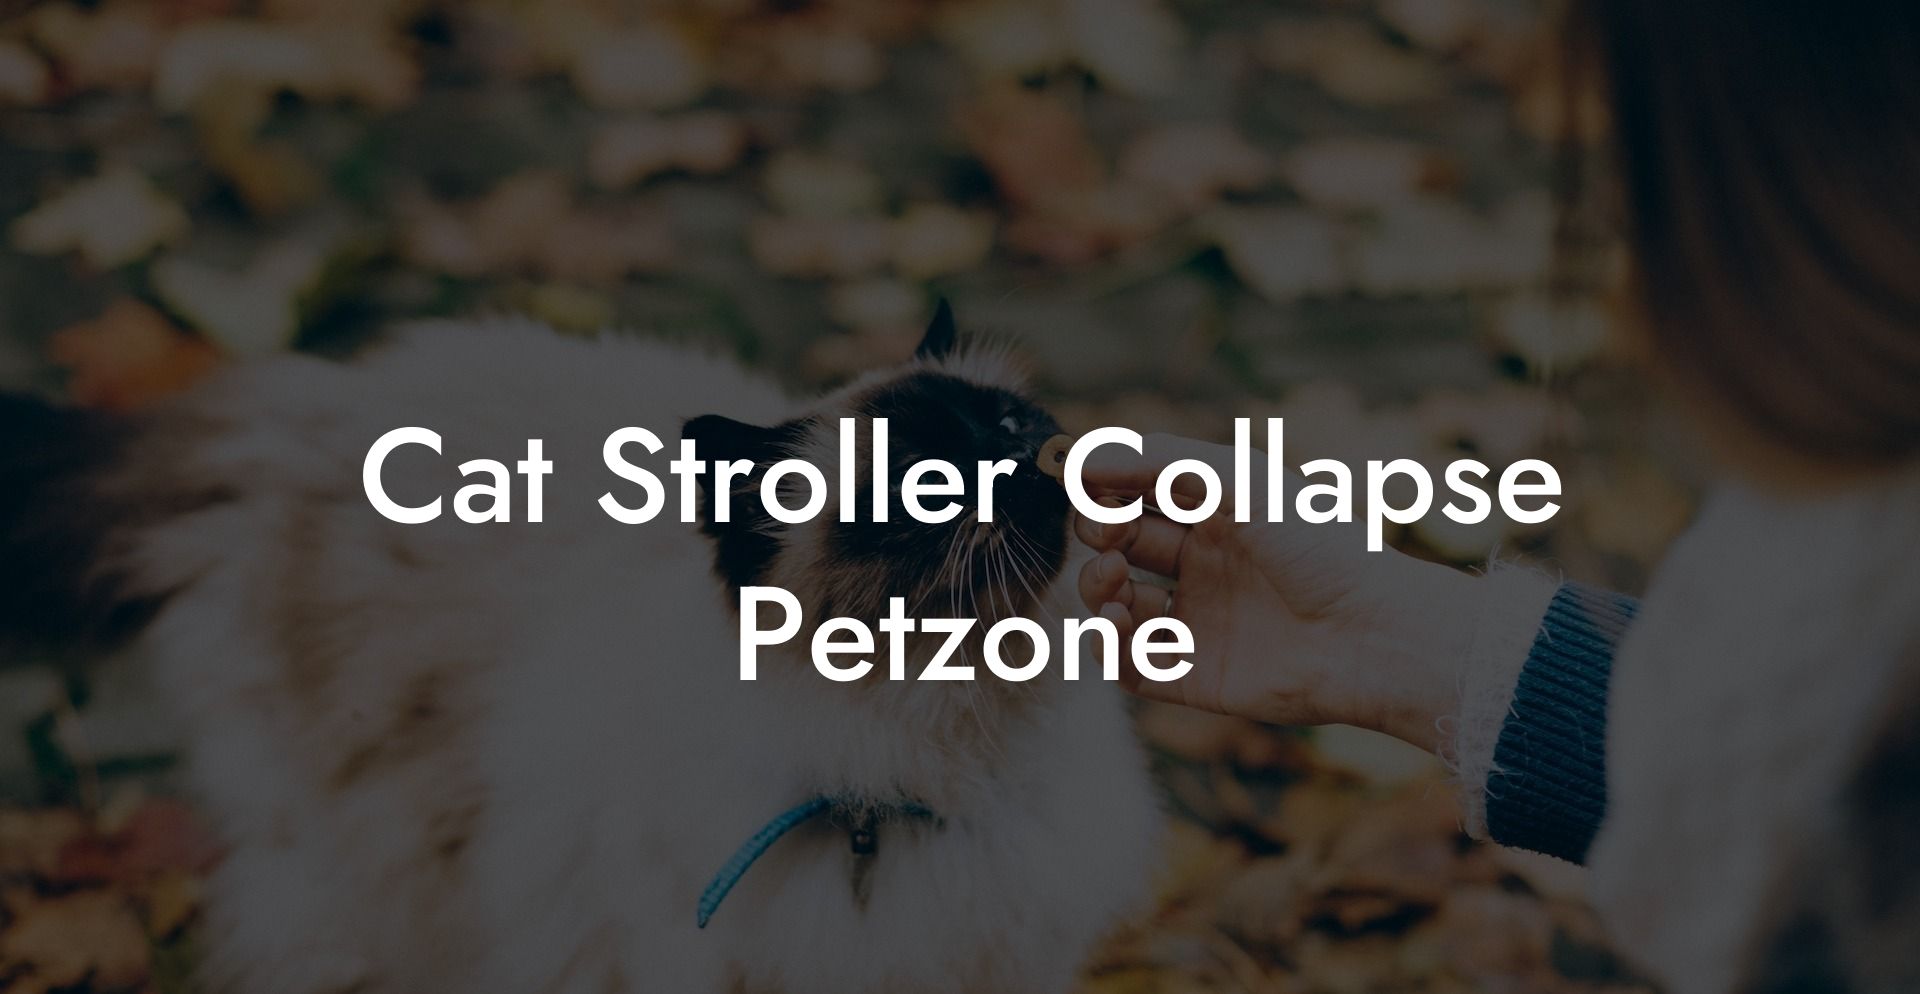 Cat Stroller Collapse Petzone